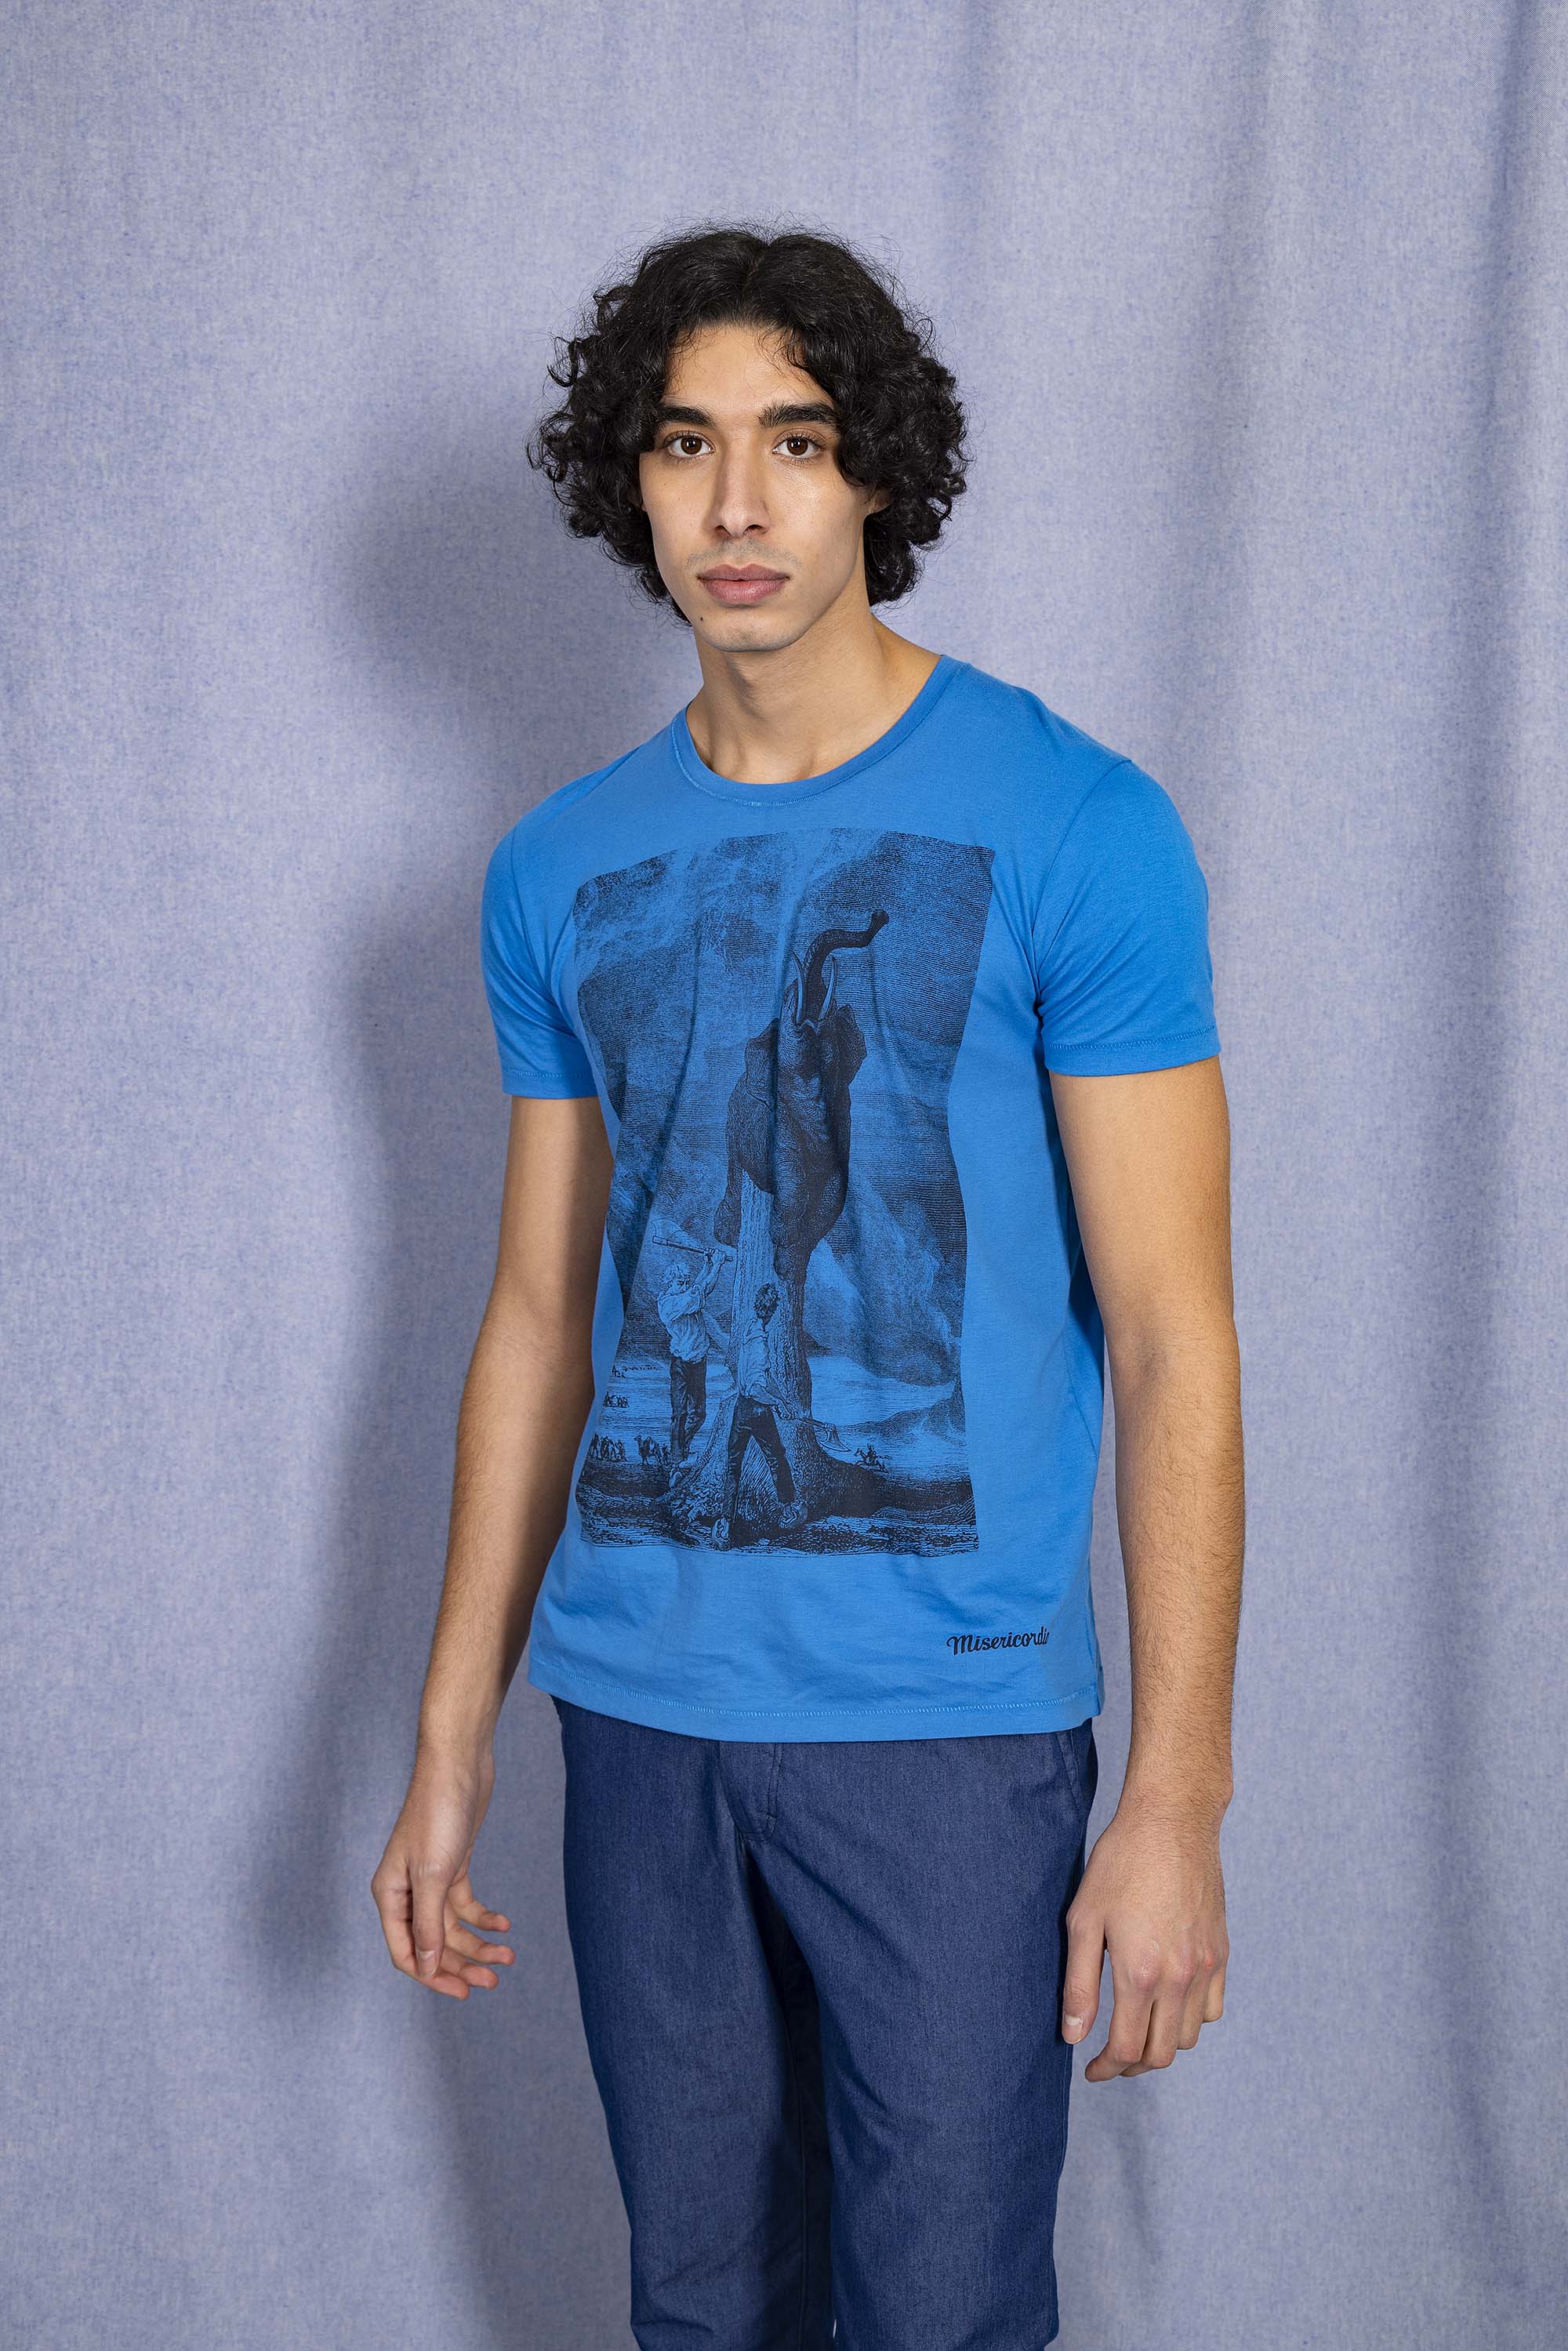 T-Shirt Querido Elefante Bleu t-shirts pour homme unis ou imprimés en coton agréable à porter